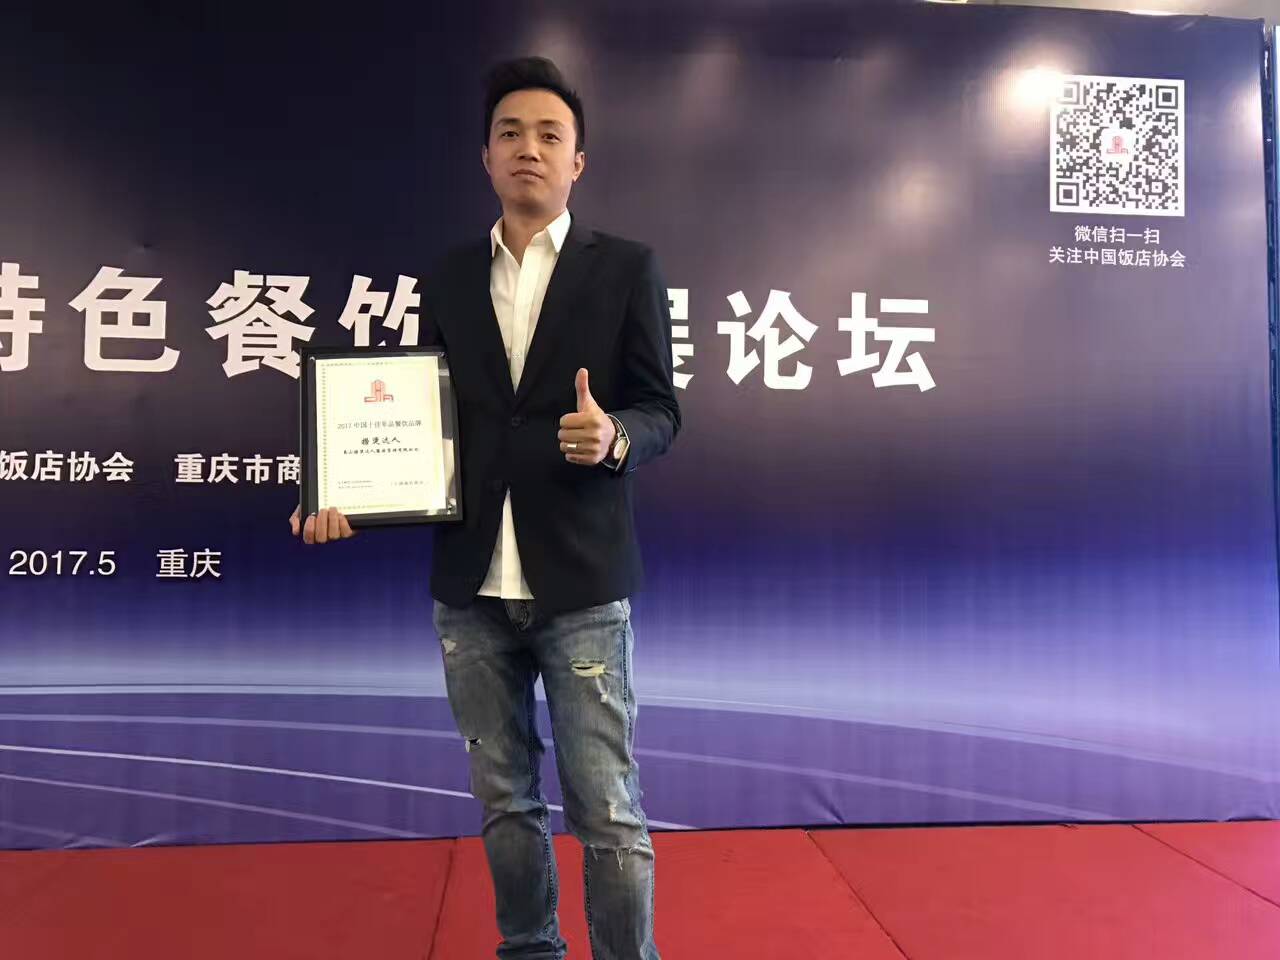 恭喜捞烫达人荣获“2017中国十佳单品餐饮品牌”